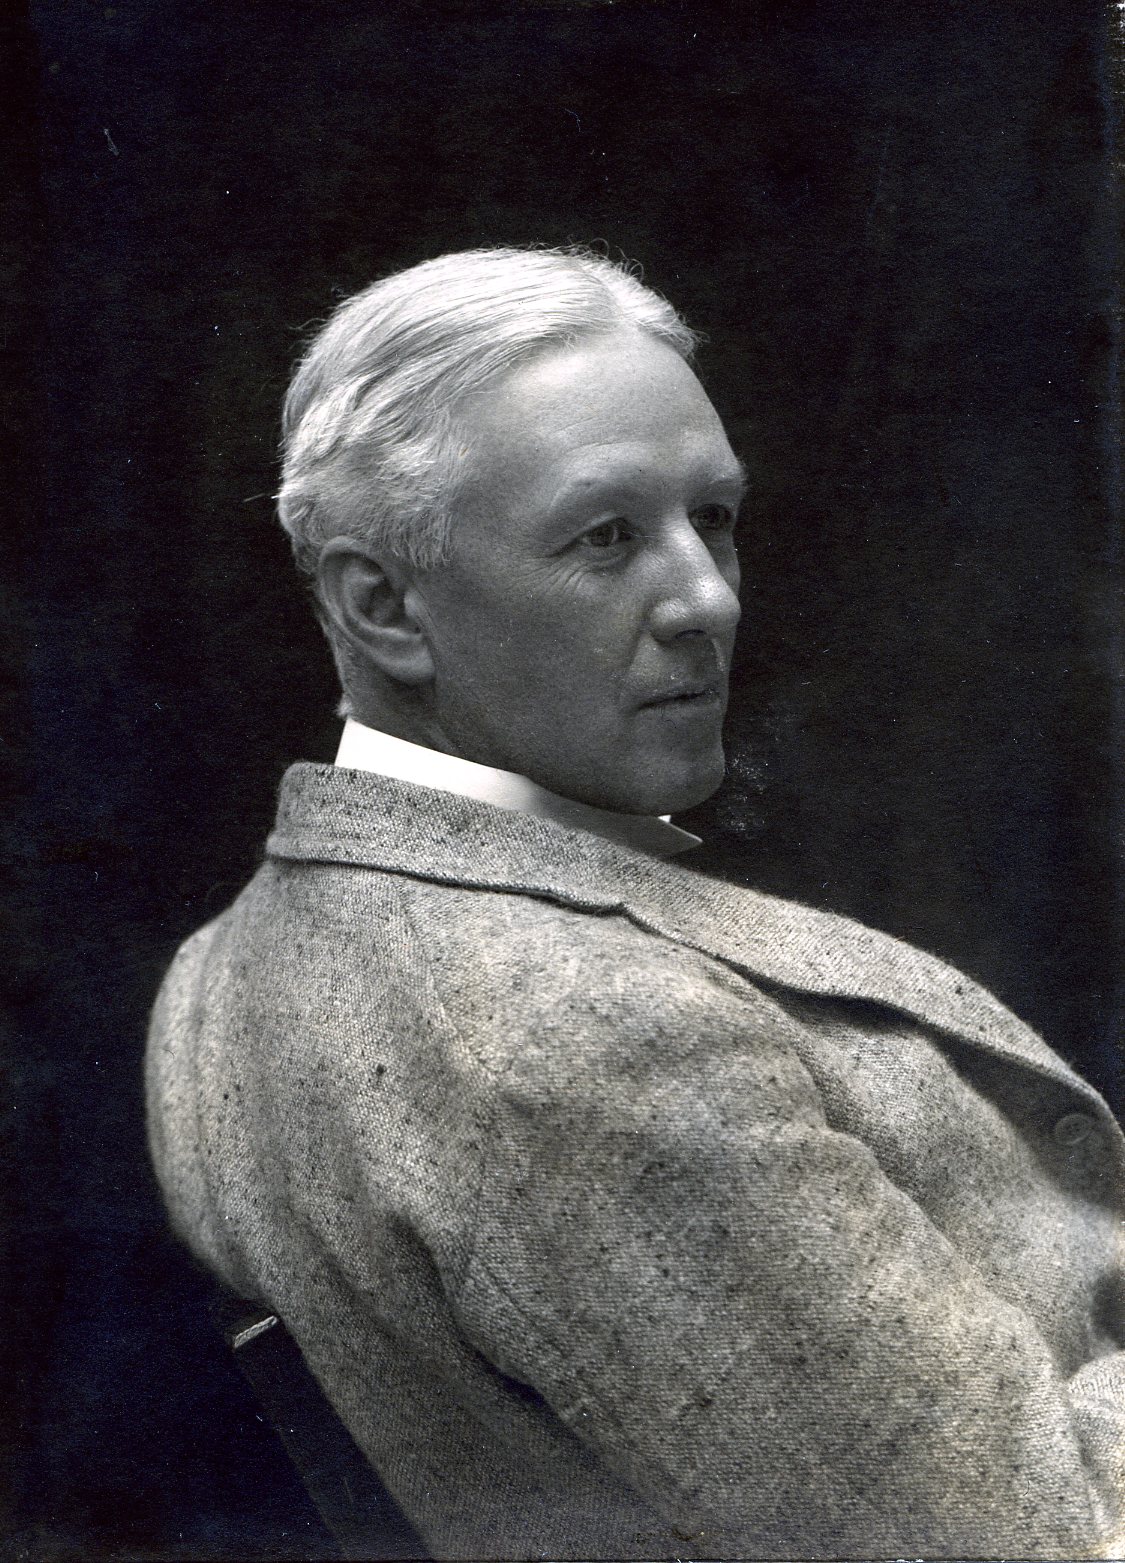 Member portrait of Alexander Stirling Calder